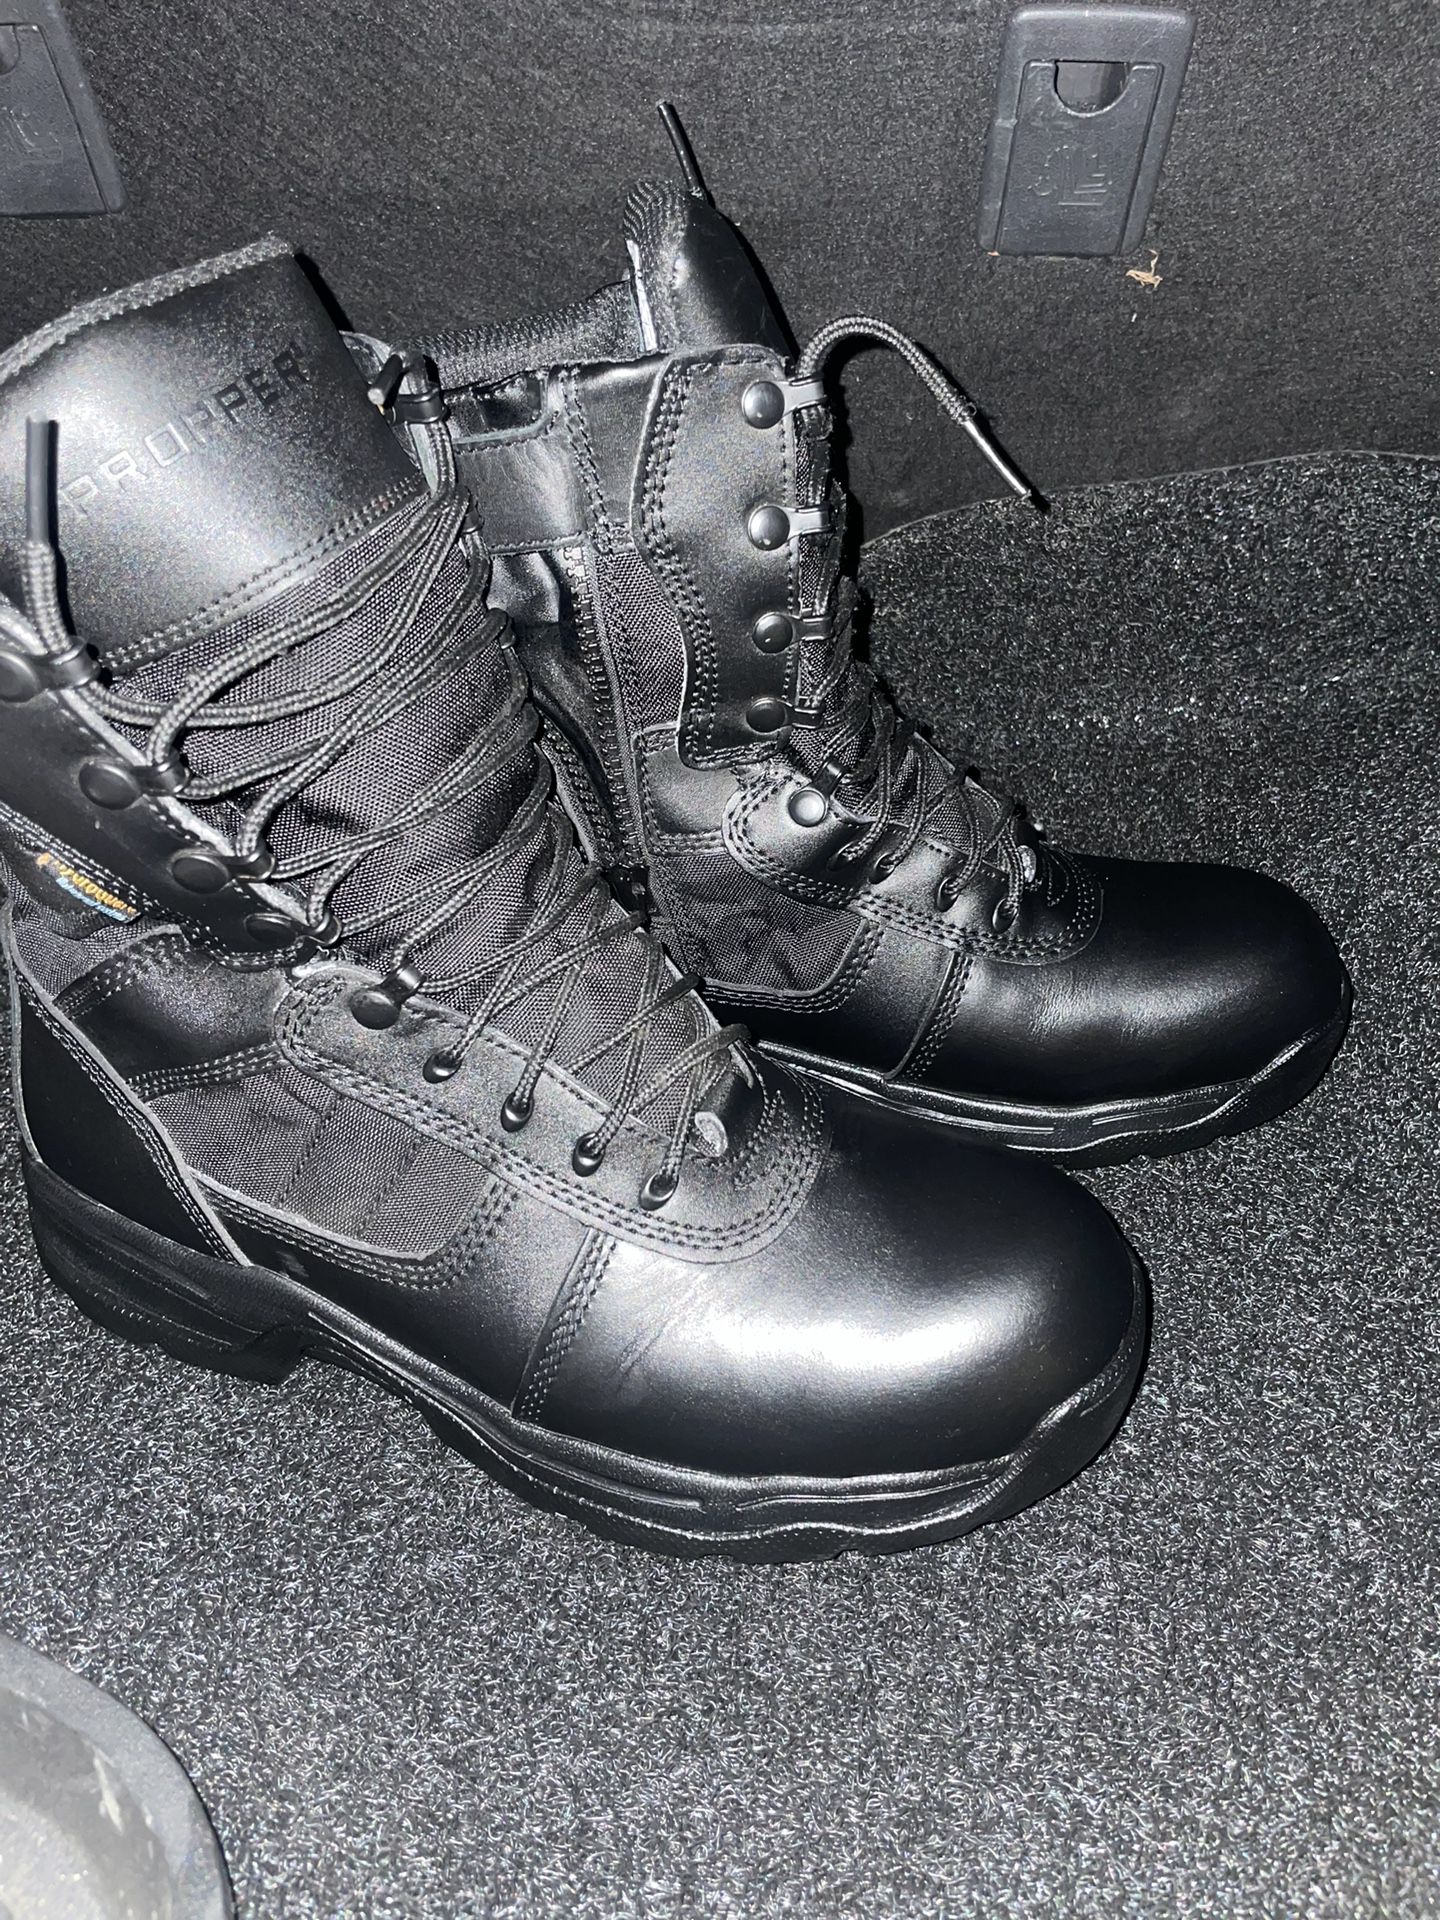 Men’s Tactical Boots 